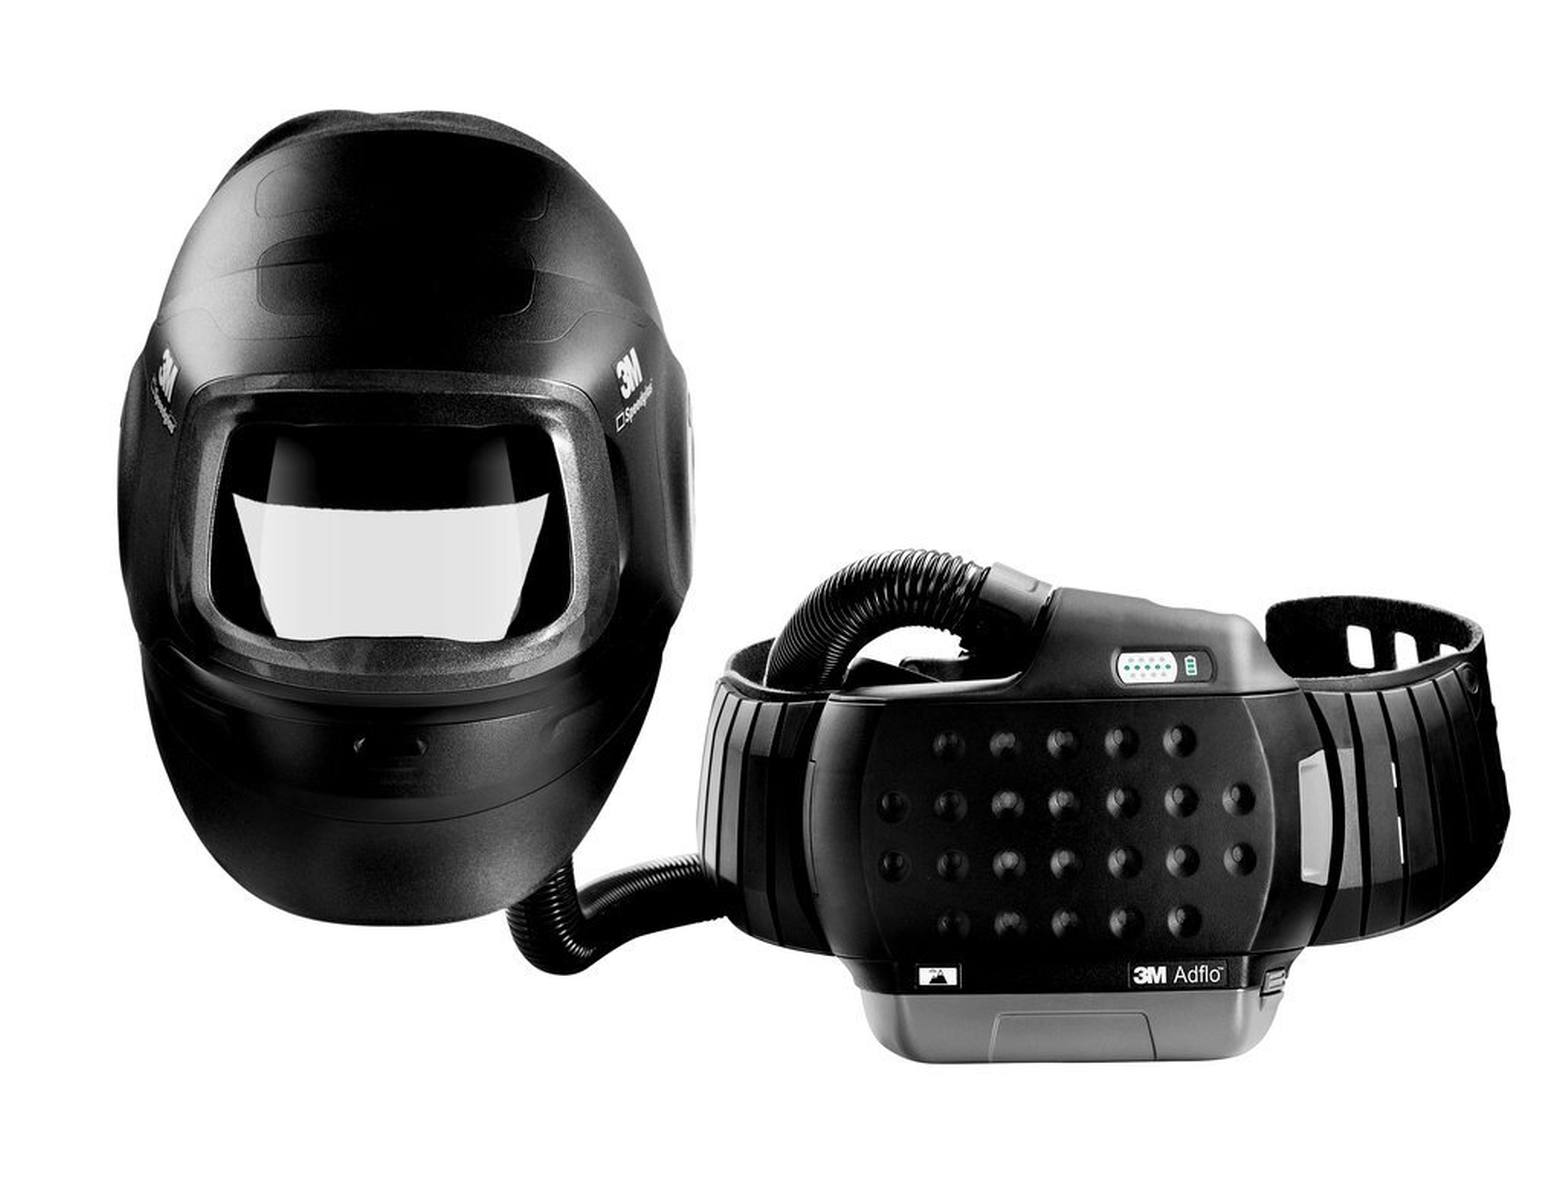 3M Speedglas Hochleistungs-Schweißmaske G5-01 mit 3M Adflo Gebläseatemschutz, Hochleistungsbatterie, Verbrauchsmaterialien Starter- Set und Aufbewahrungstasche, ohne Schweißfilter, H617809